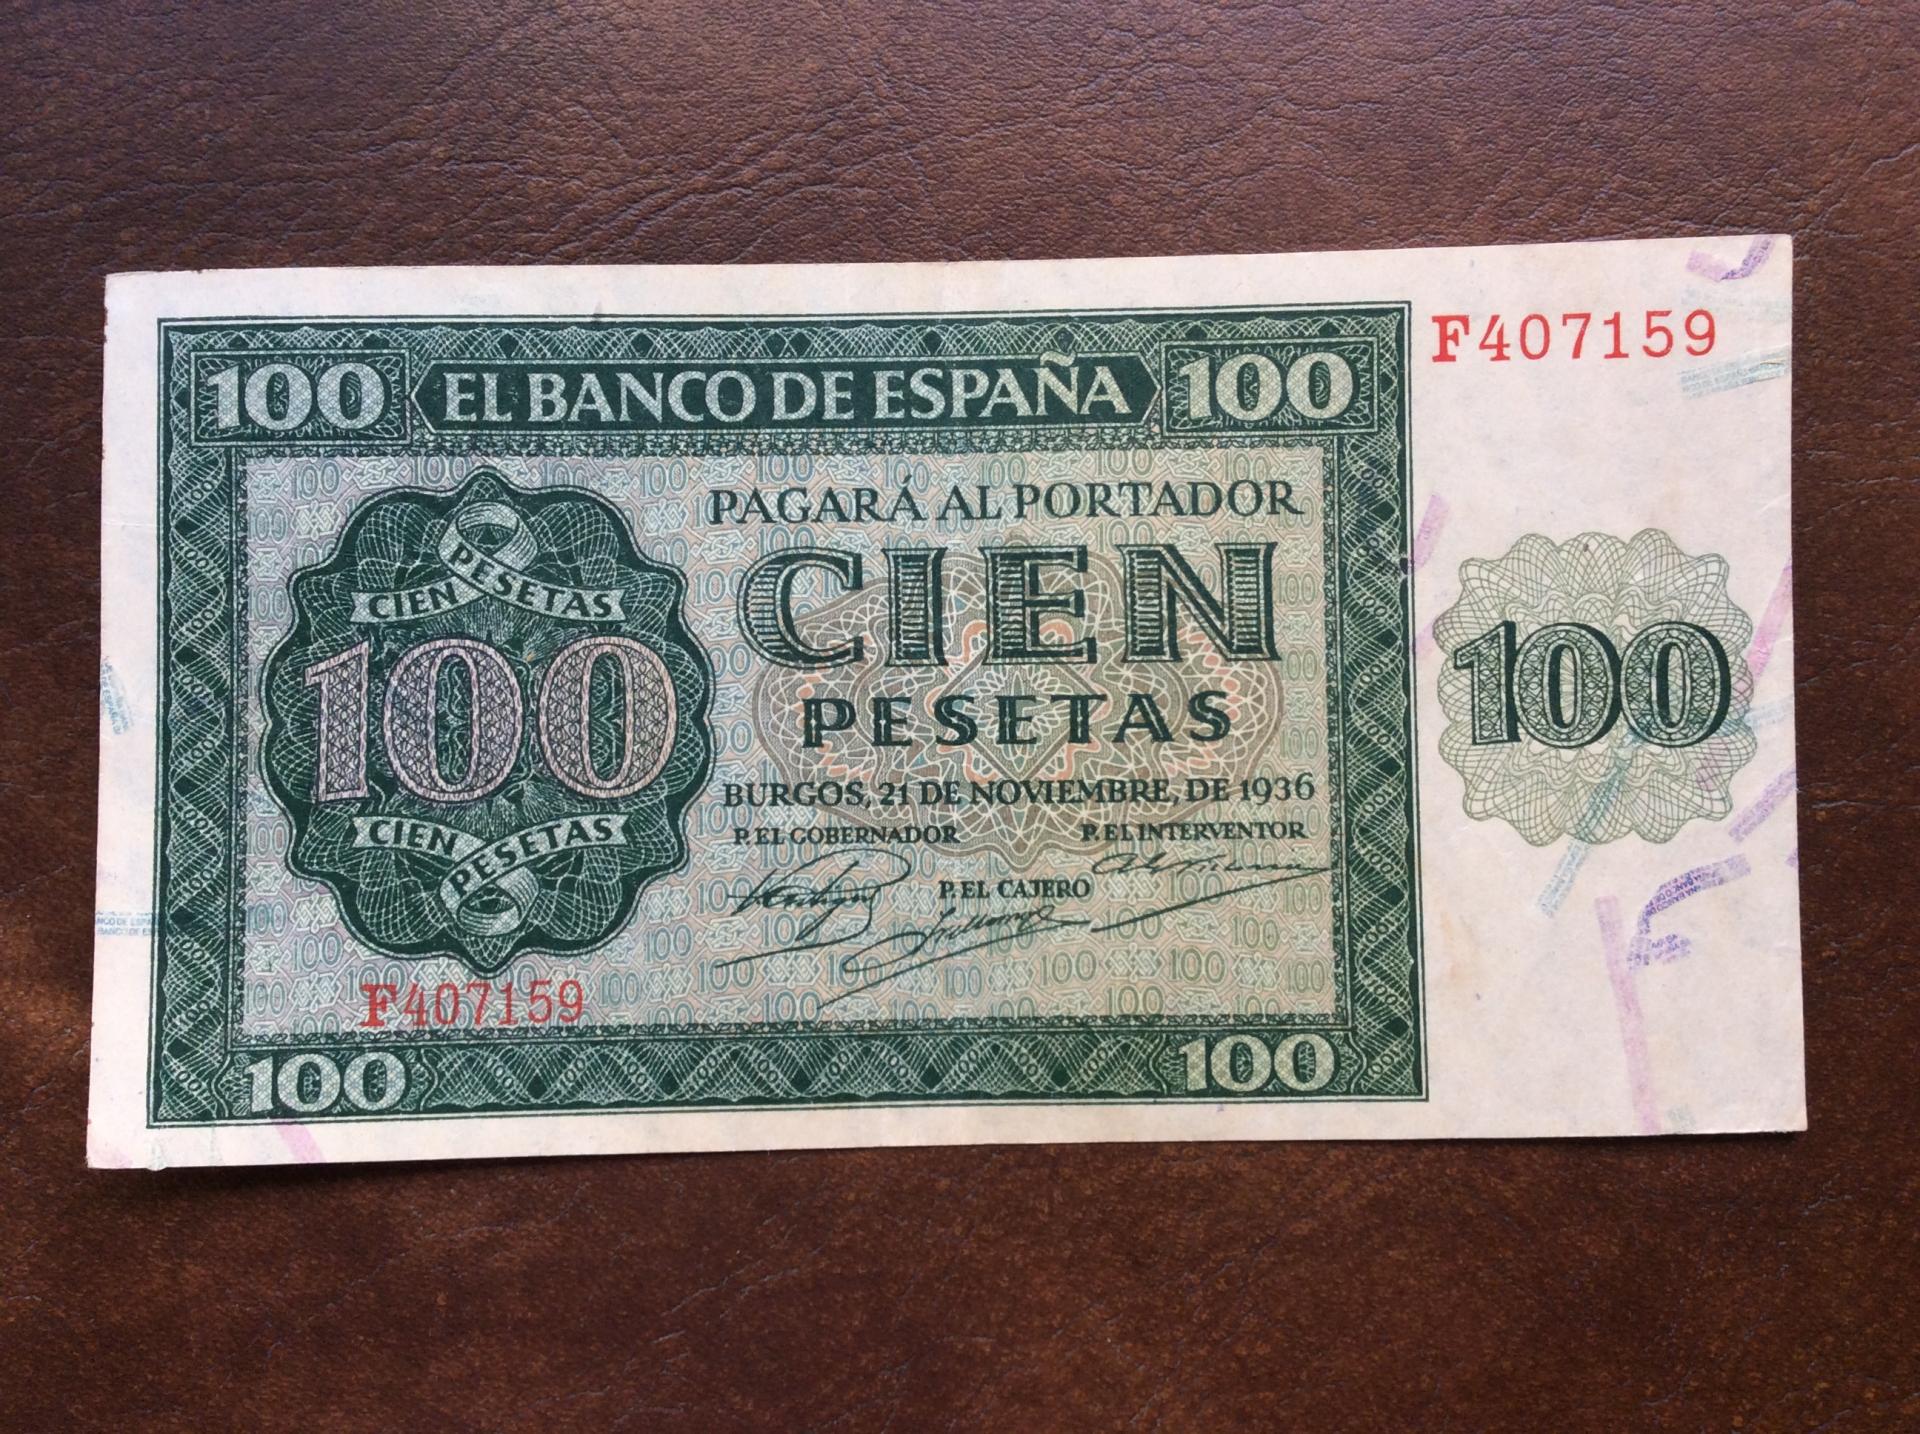 100 PESETAS 1936 - BURGOS 